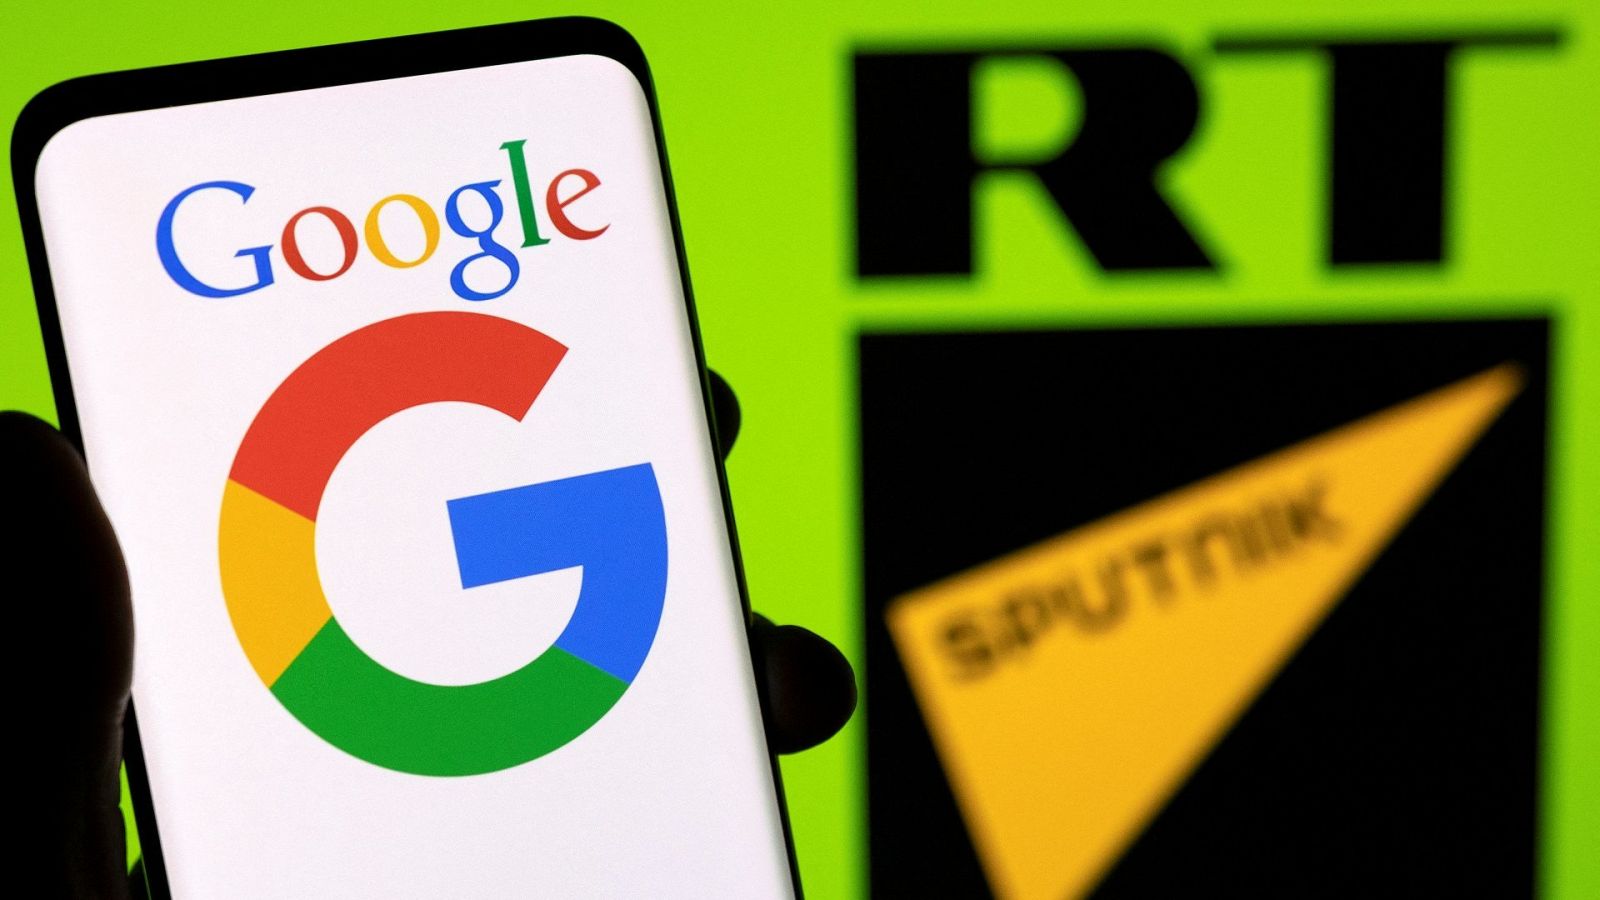 El logo de Google visto en la pantalla de un teléfono frente a los símbolos de los canales rusos RT y Sputnik